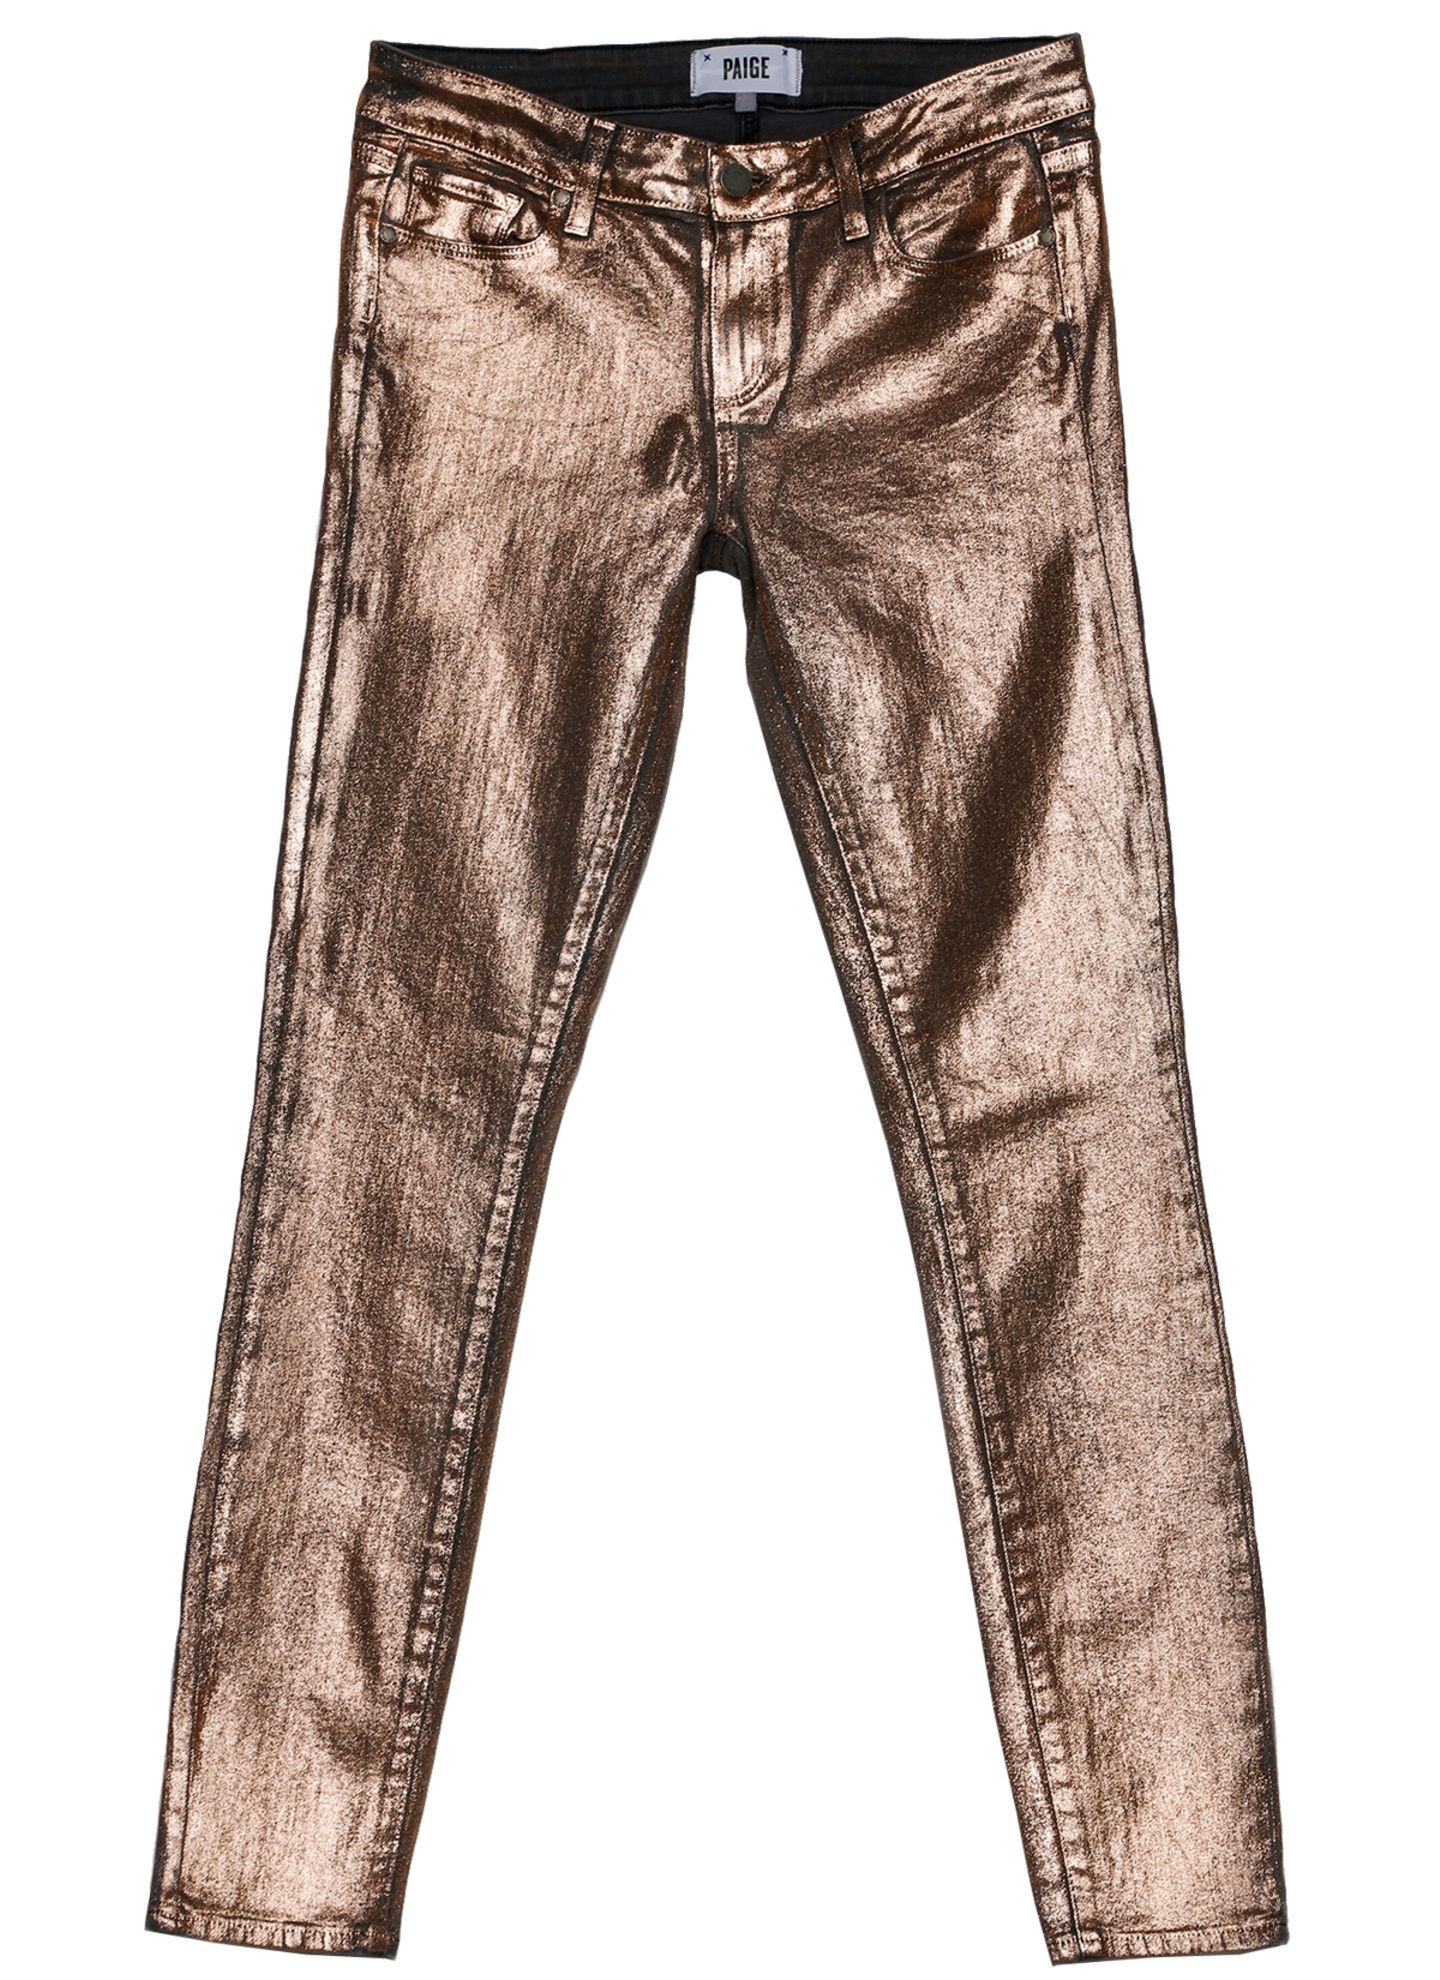 Wie in Bronze gegossen: Jeans in Metallic-Optik, von Paige, ca. 180 Euro